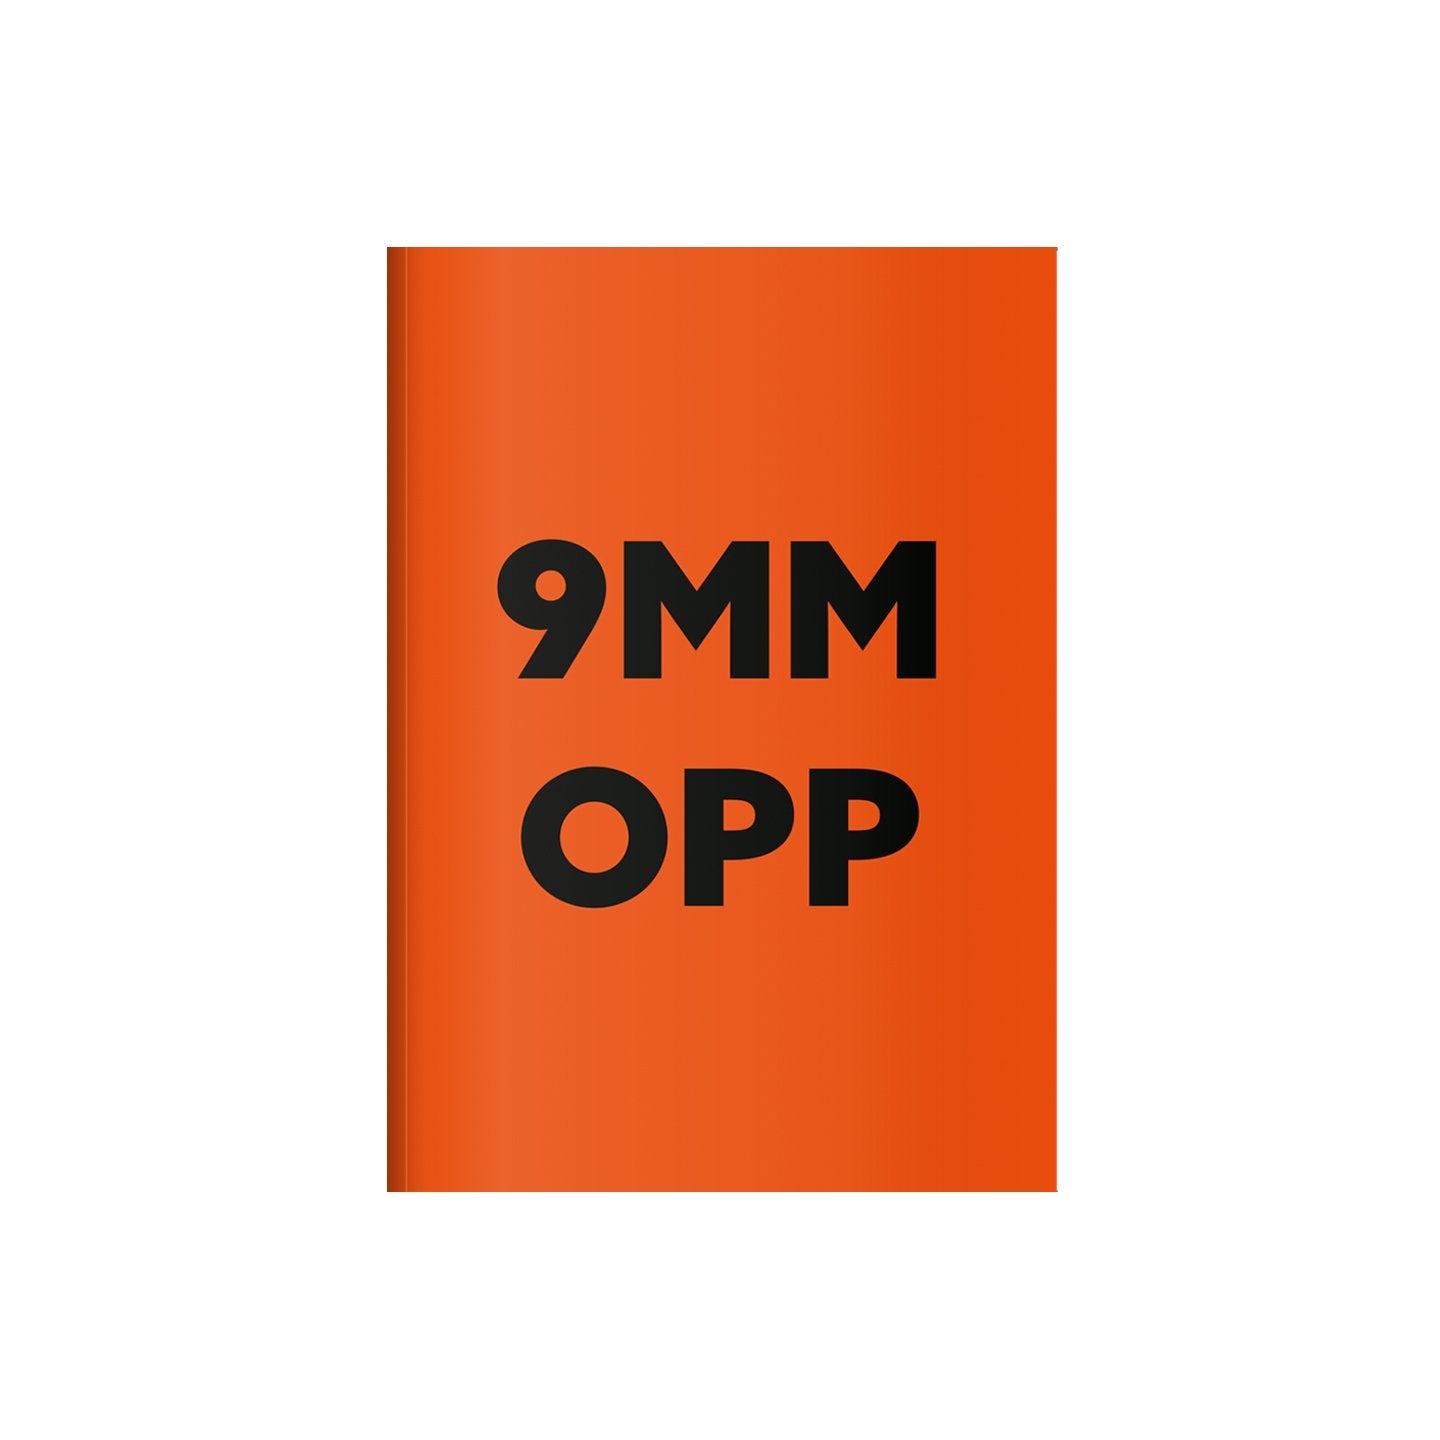 9MM /OPP